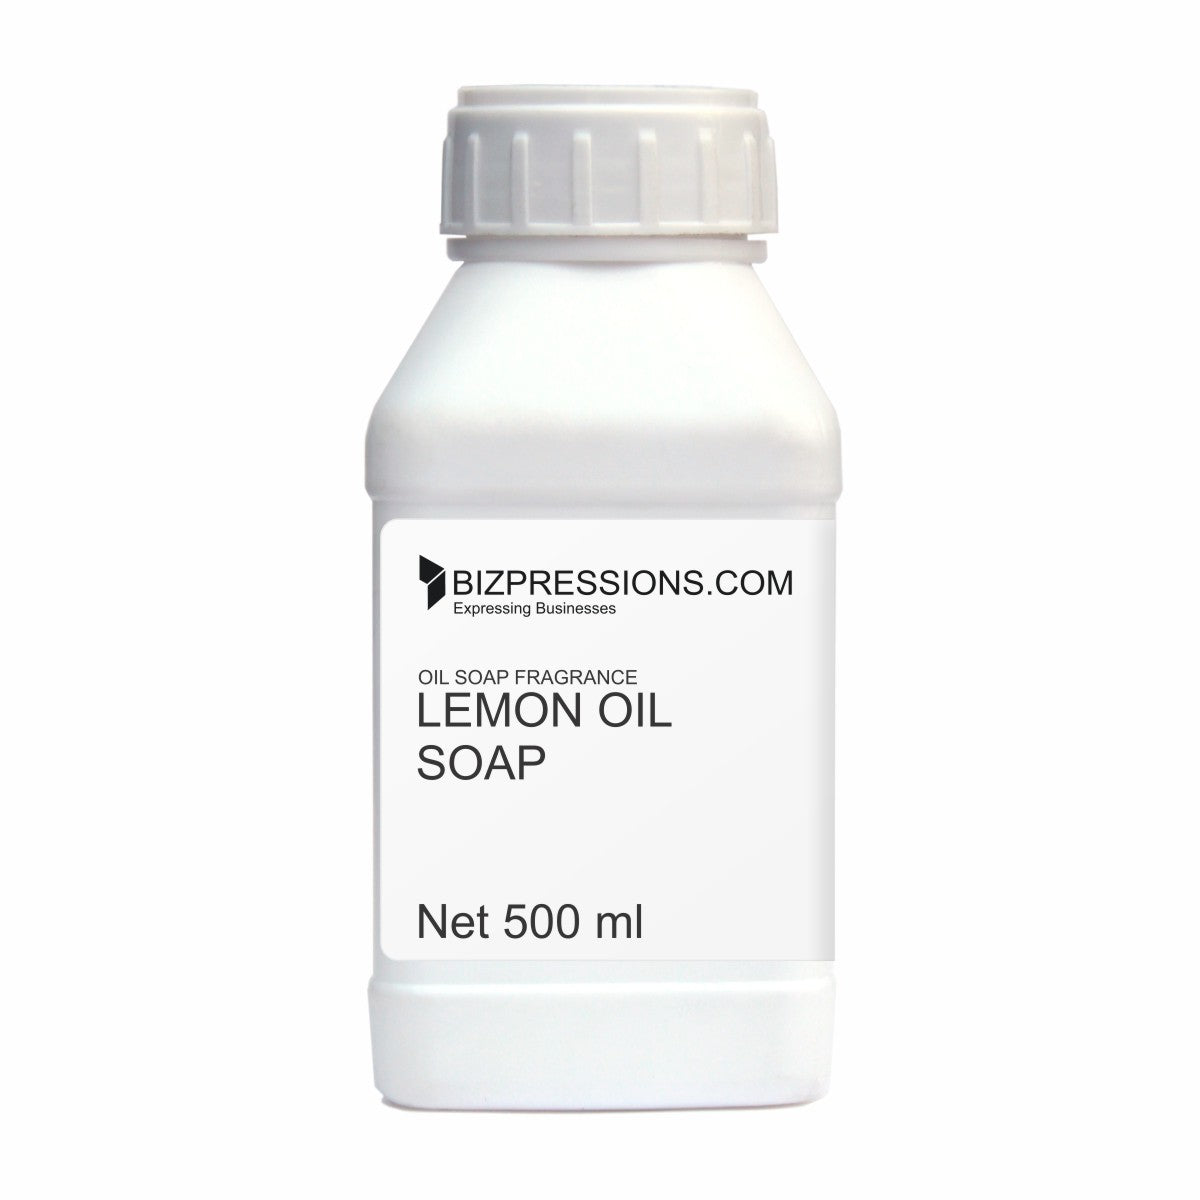 LEMON OIL SOAP - Oil Fragrance ( Oil Soluble ) - 500 gm